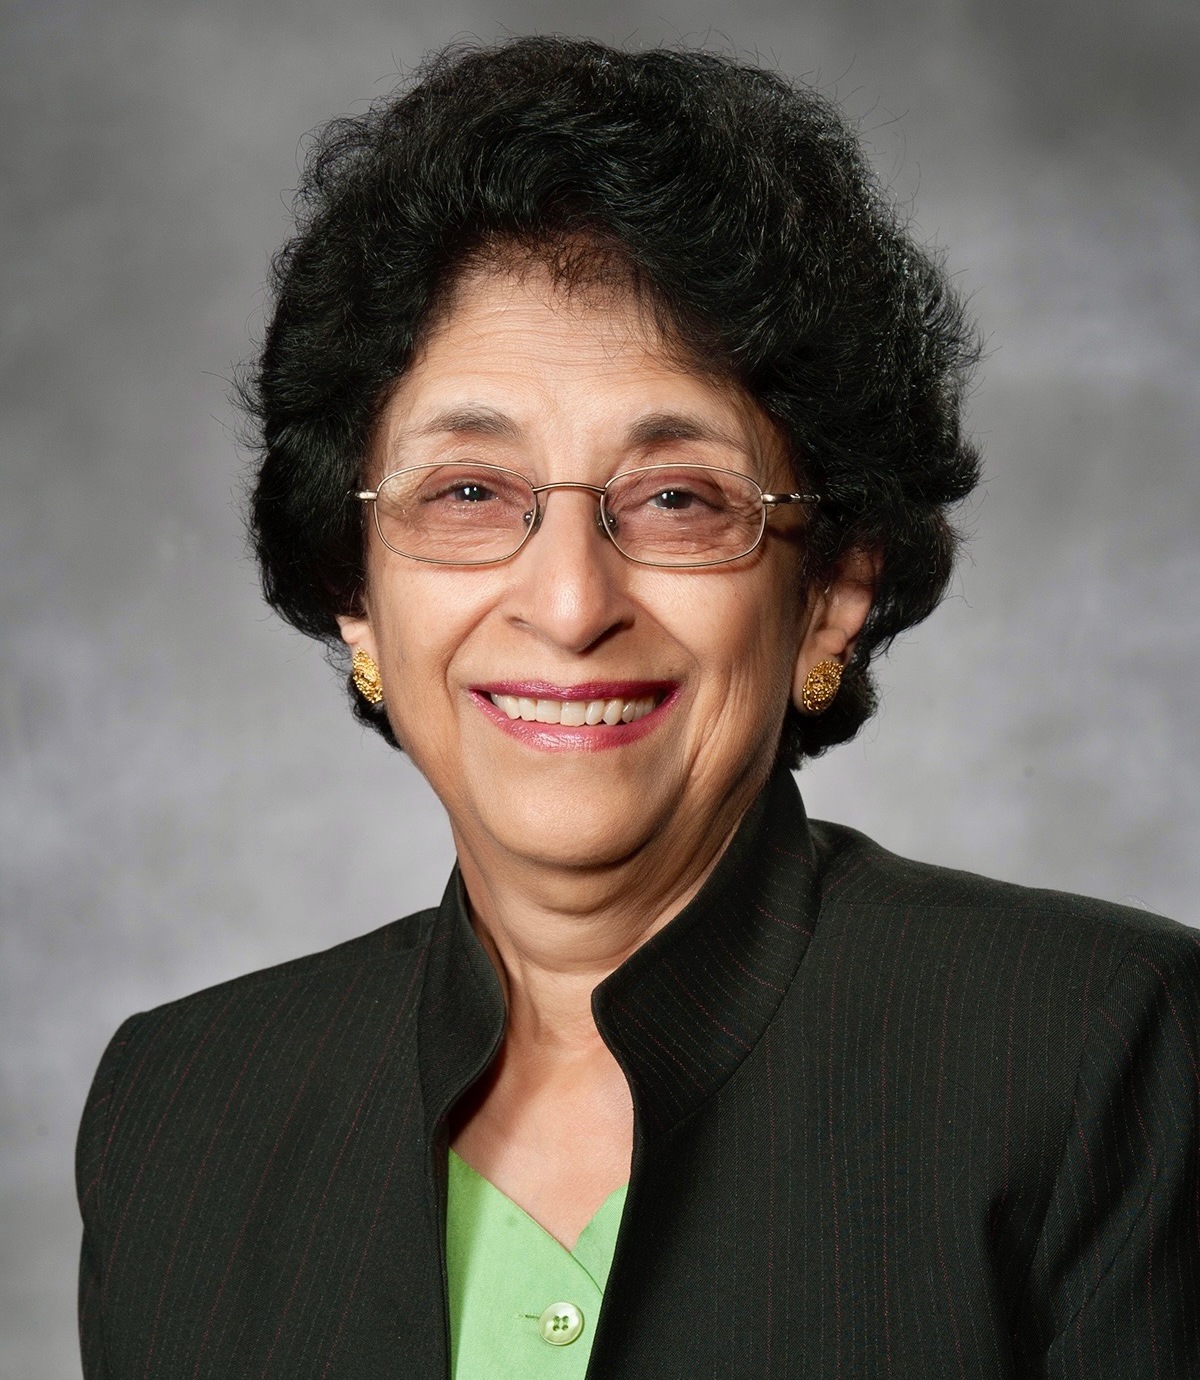 Dr. Arun A. Kalra